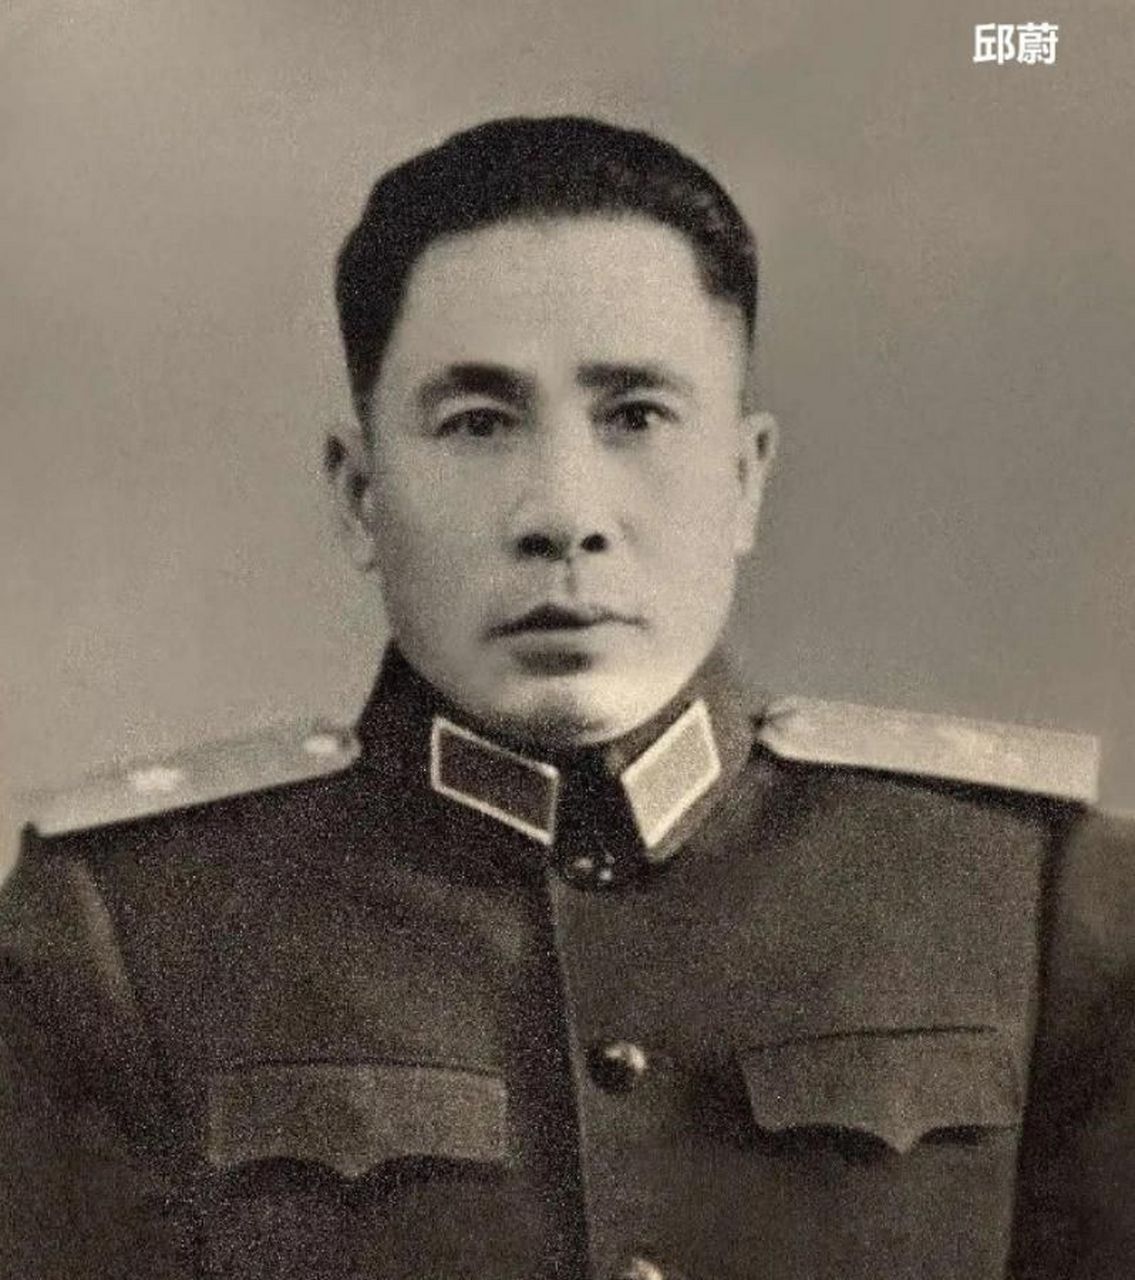 志愿军67军军长李湘因感染美军细菌武器而牺牲,年仅38岁,是在抗美援朝